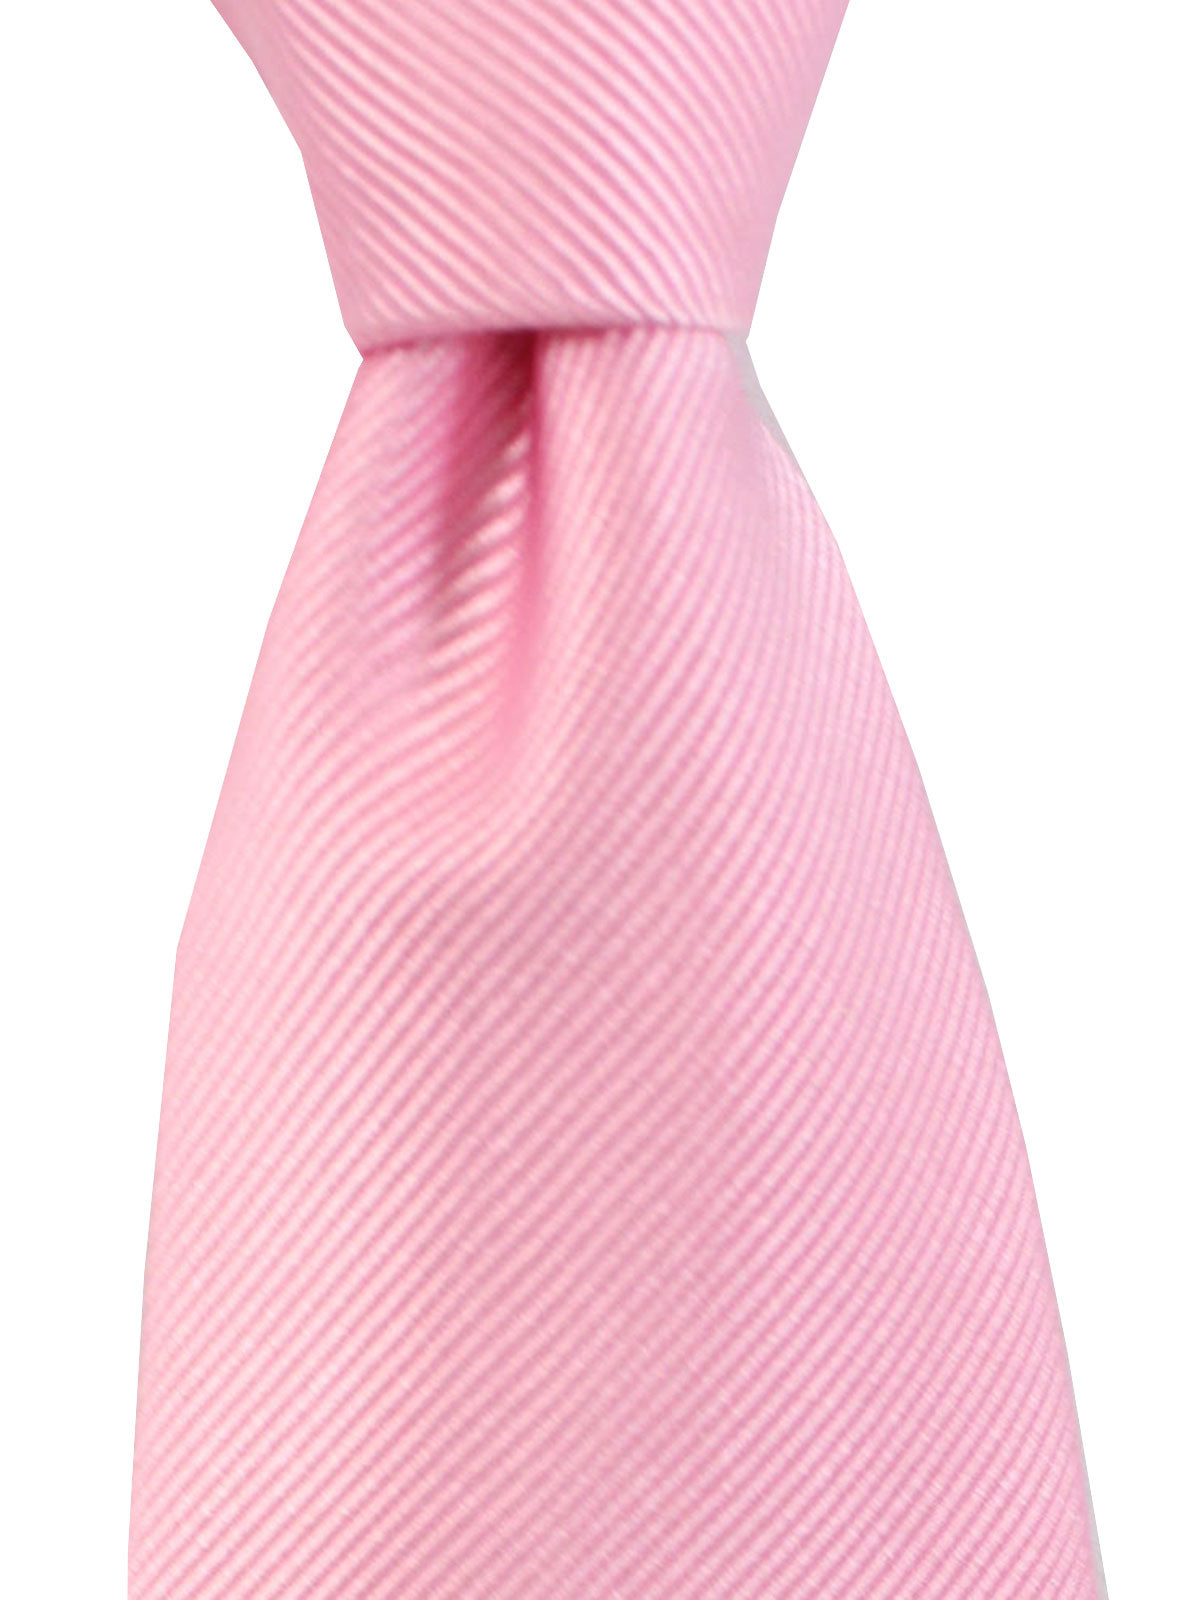 Cesare Attolini Unlined Tie Pink Grosgrain